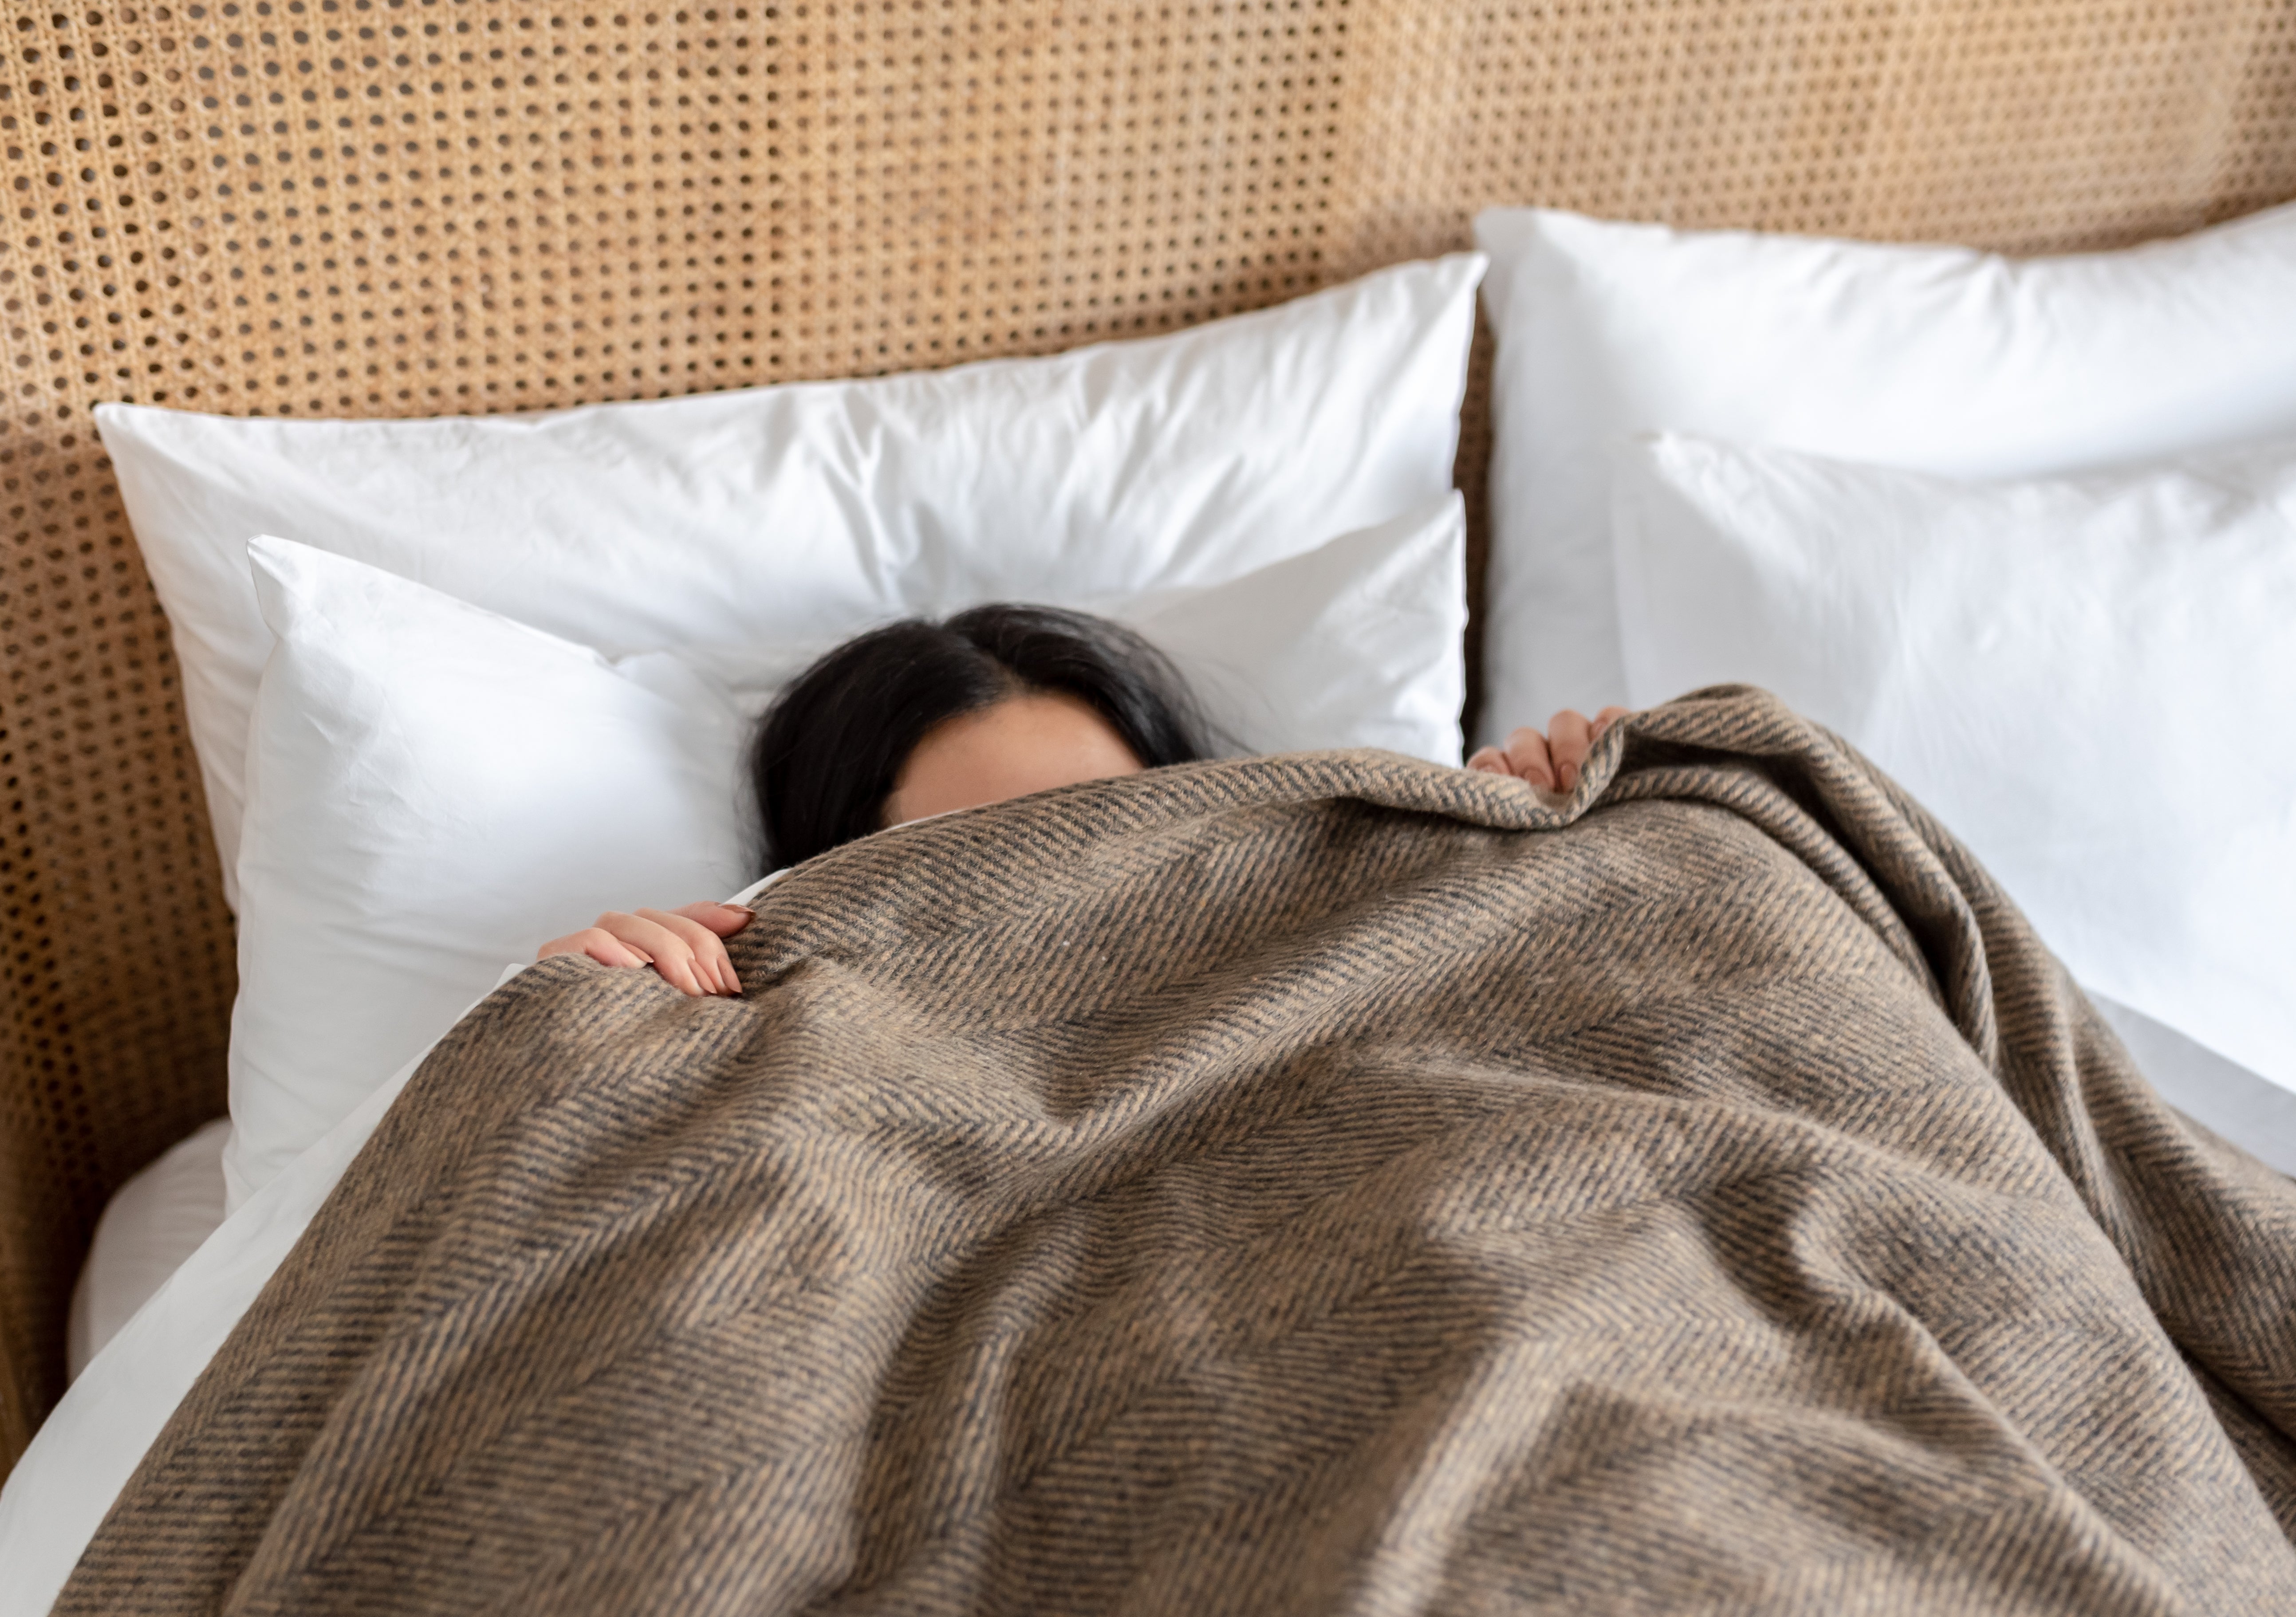 Ein Mädchen liegt im Bett und versucht zu schlafen, mit einer Wolldecke vor dem Gesicht